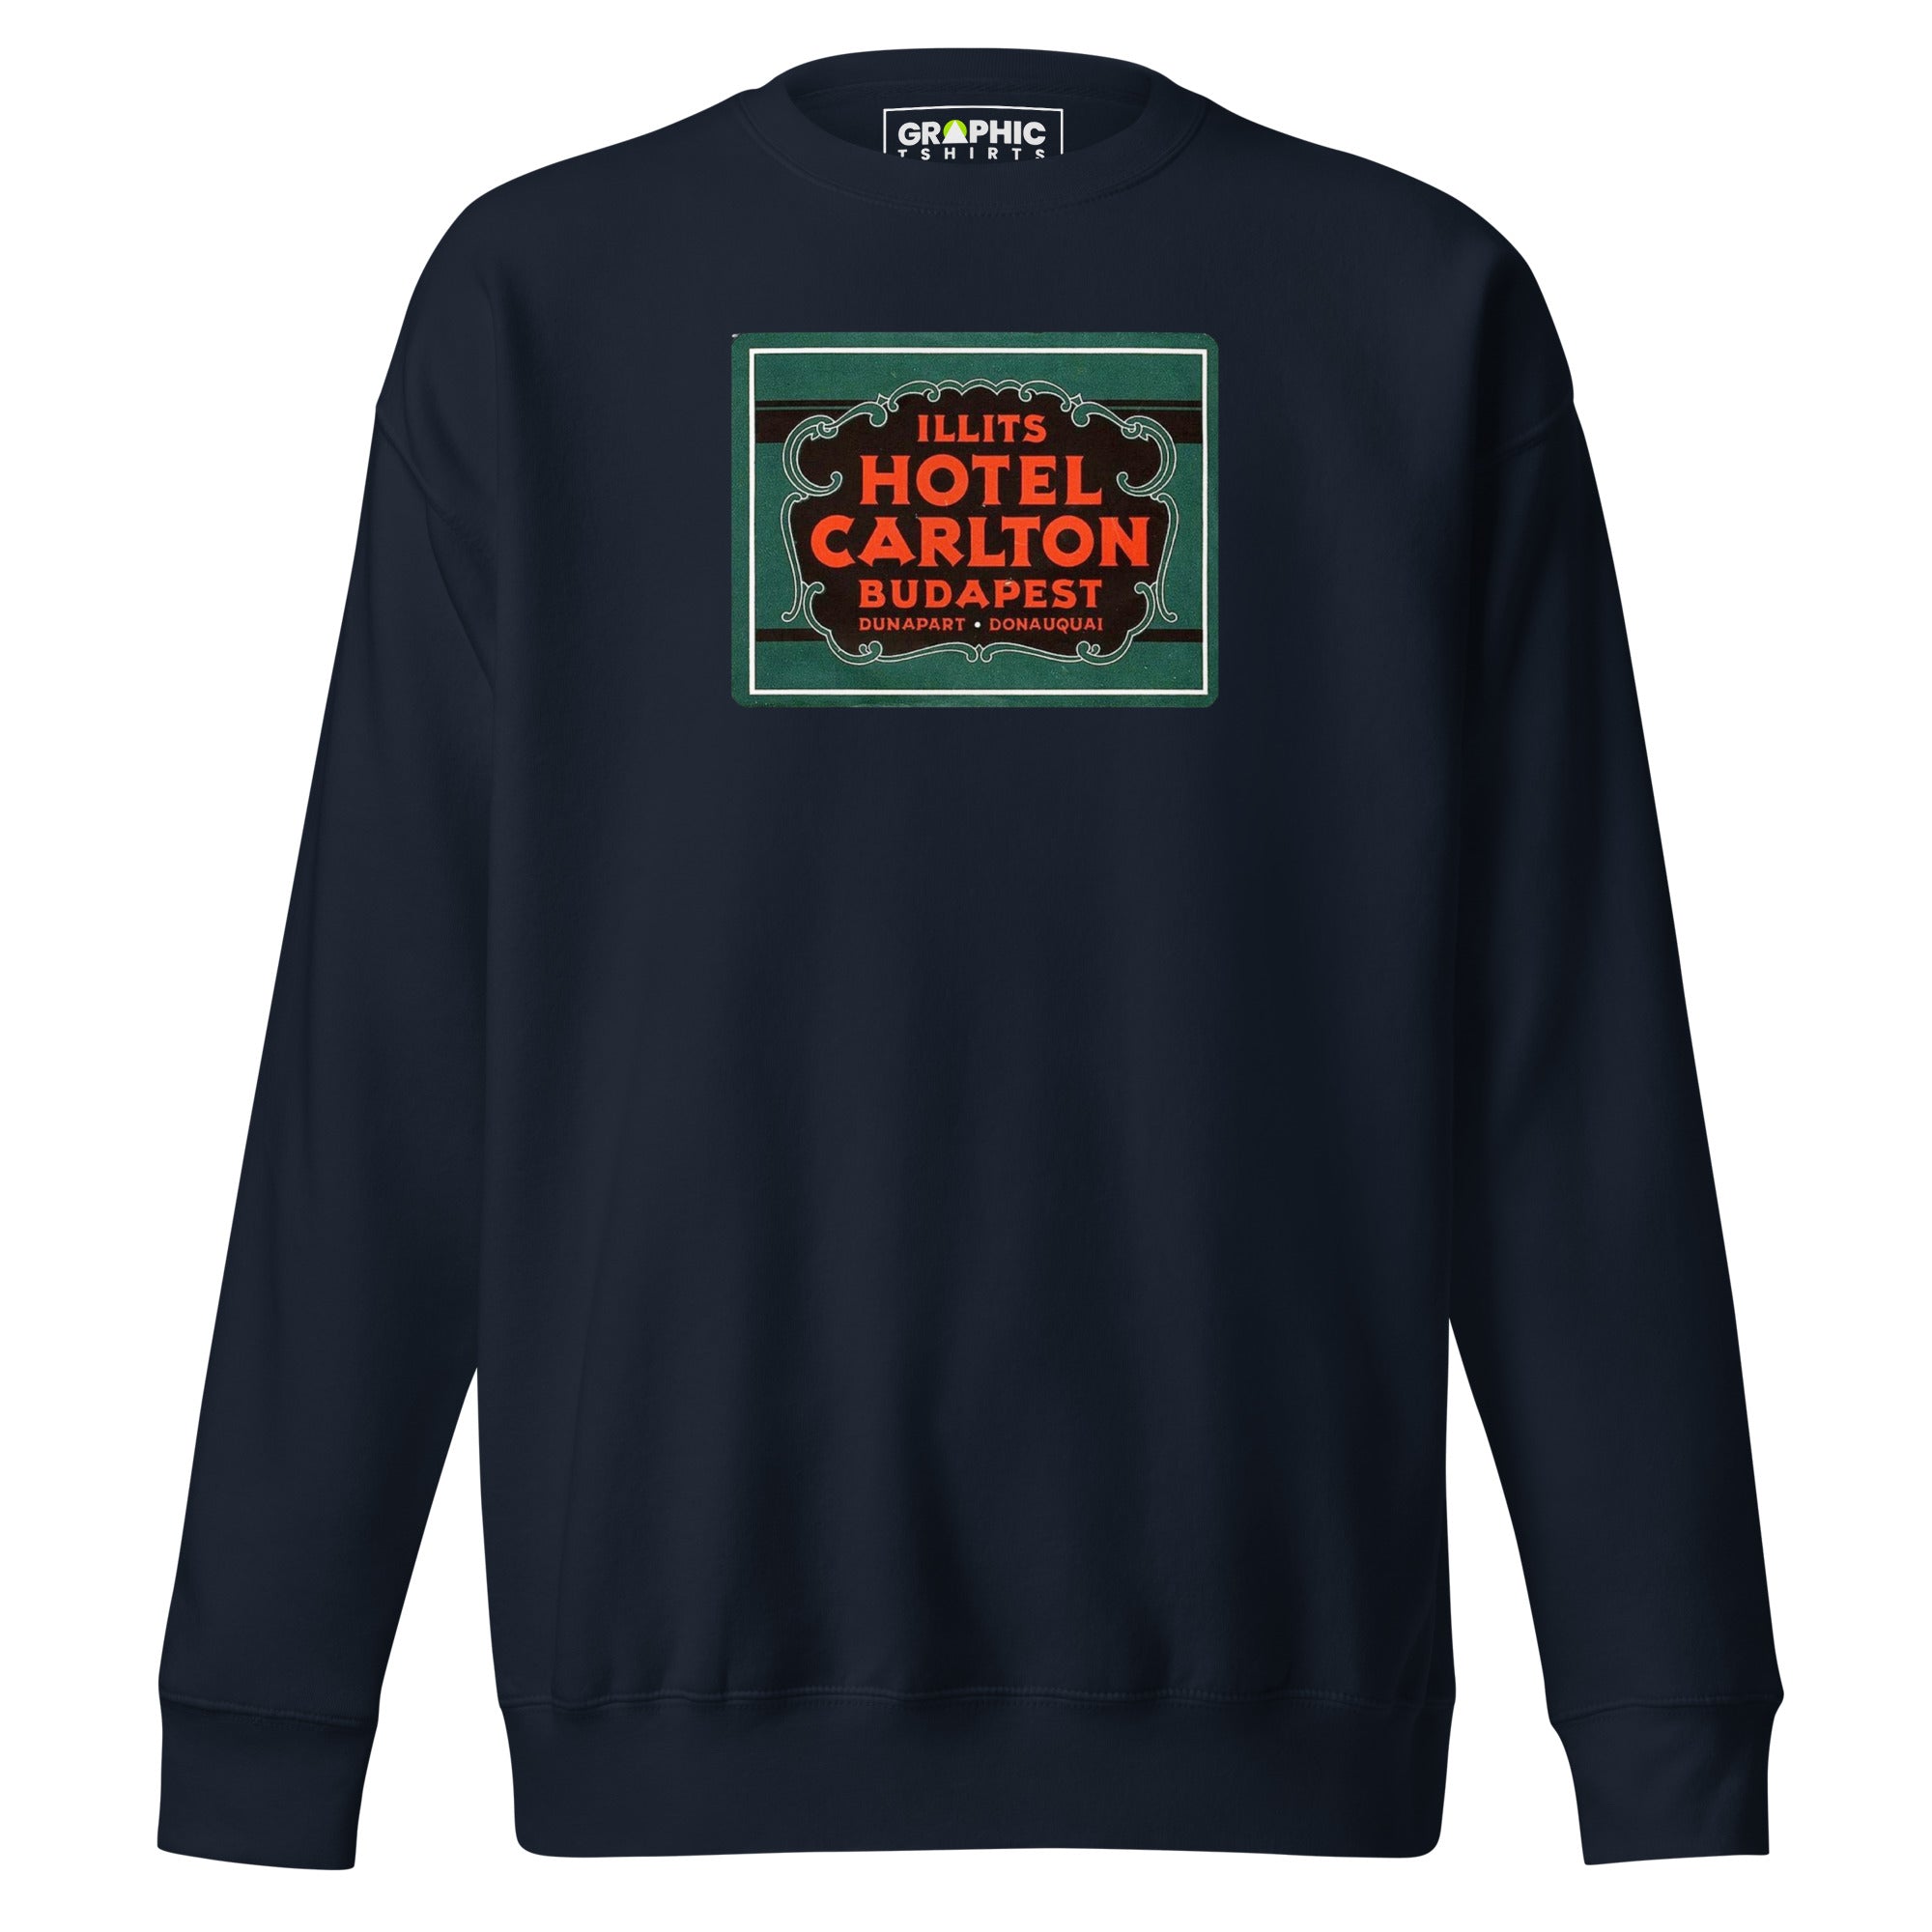 Unisex Premium Sweatshirt - Illits Hotel Carlton Budapest Hungary Vintage - GRAPHIC T-SHIRTS